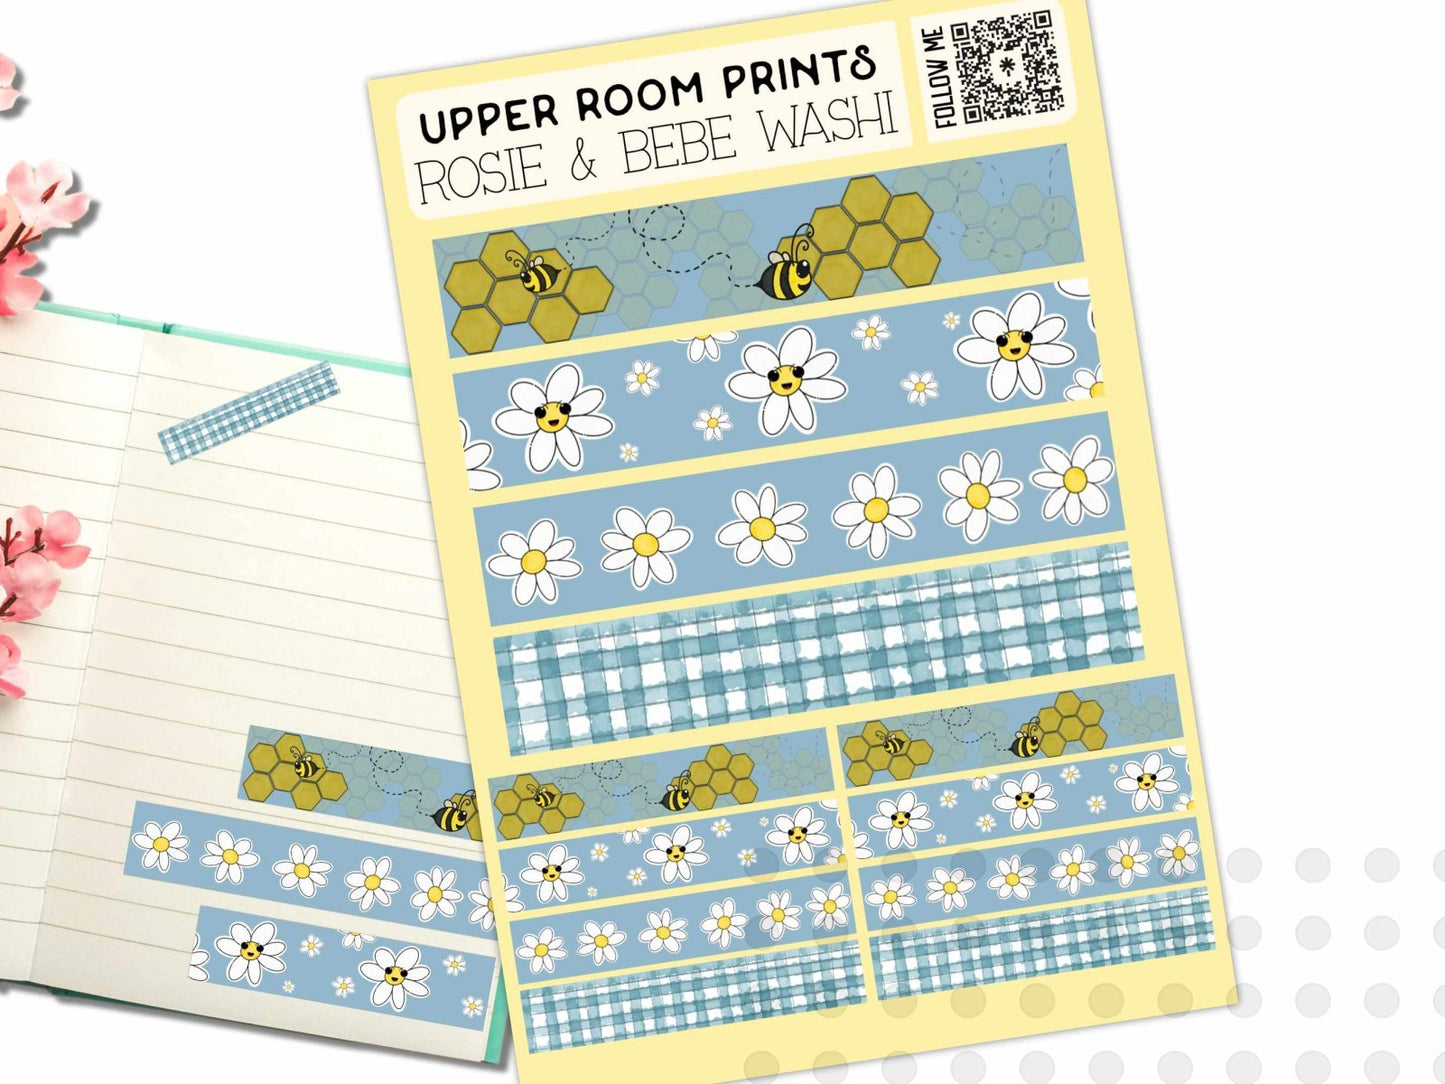 Rosie & Bebe Washi Sticker Sheet - Stickers - UpperRoomPrints